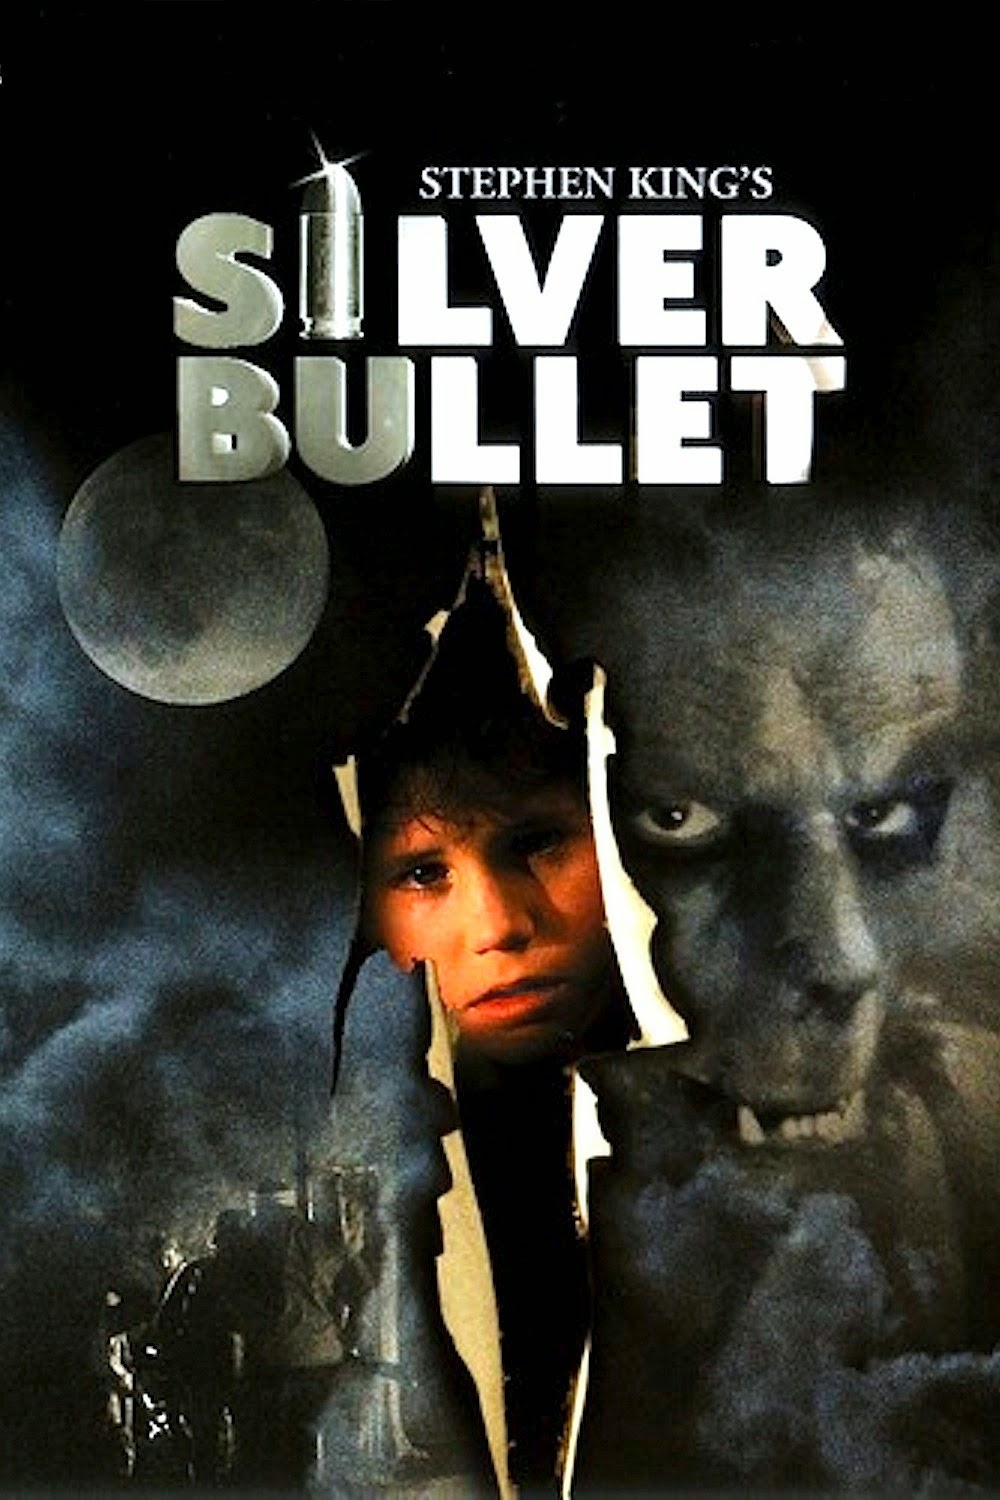 Silver Bullet (1985) - Metacritic reviews - IMDb